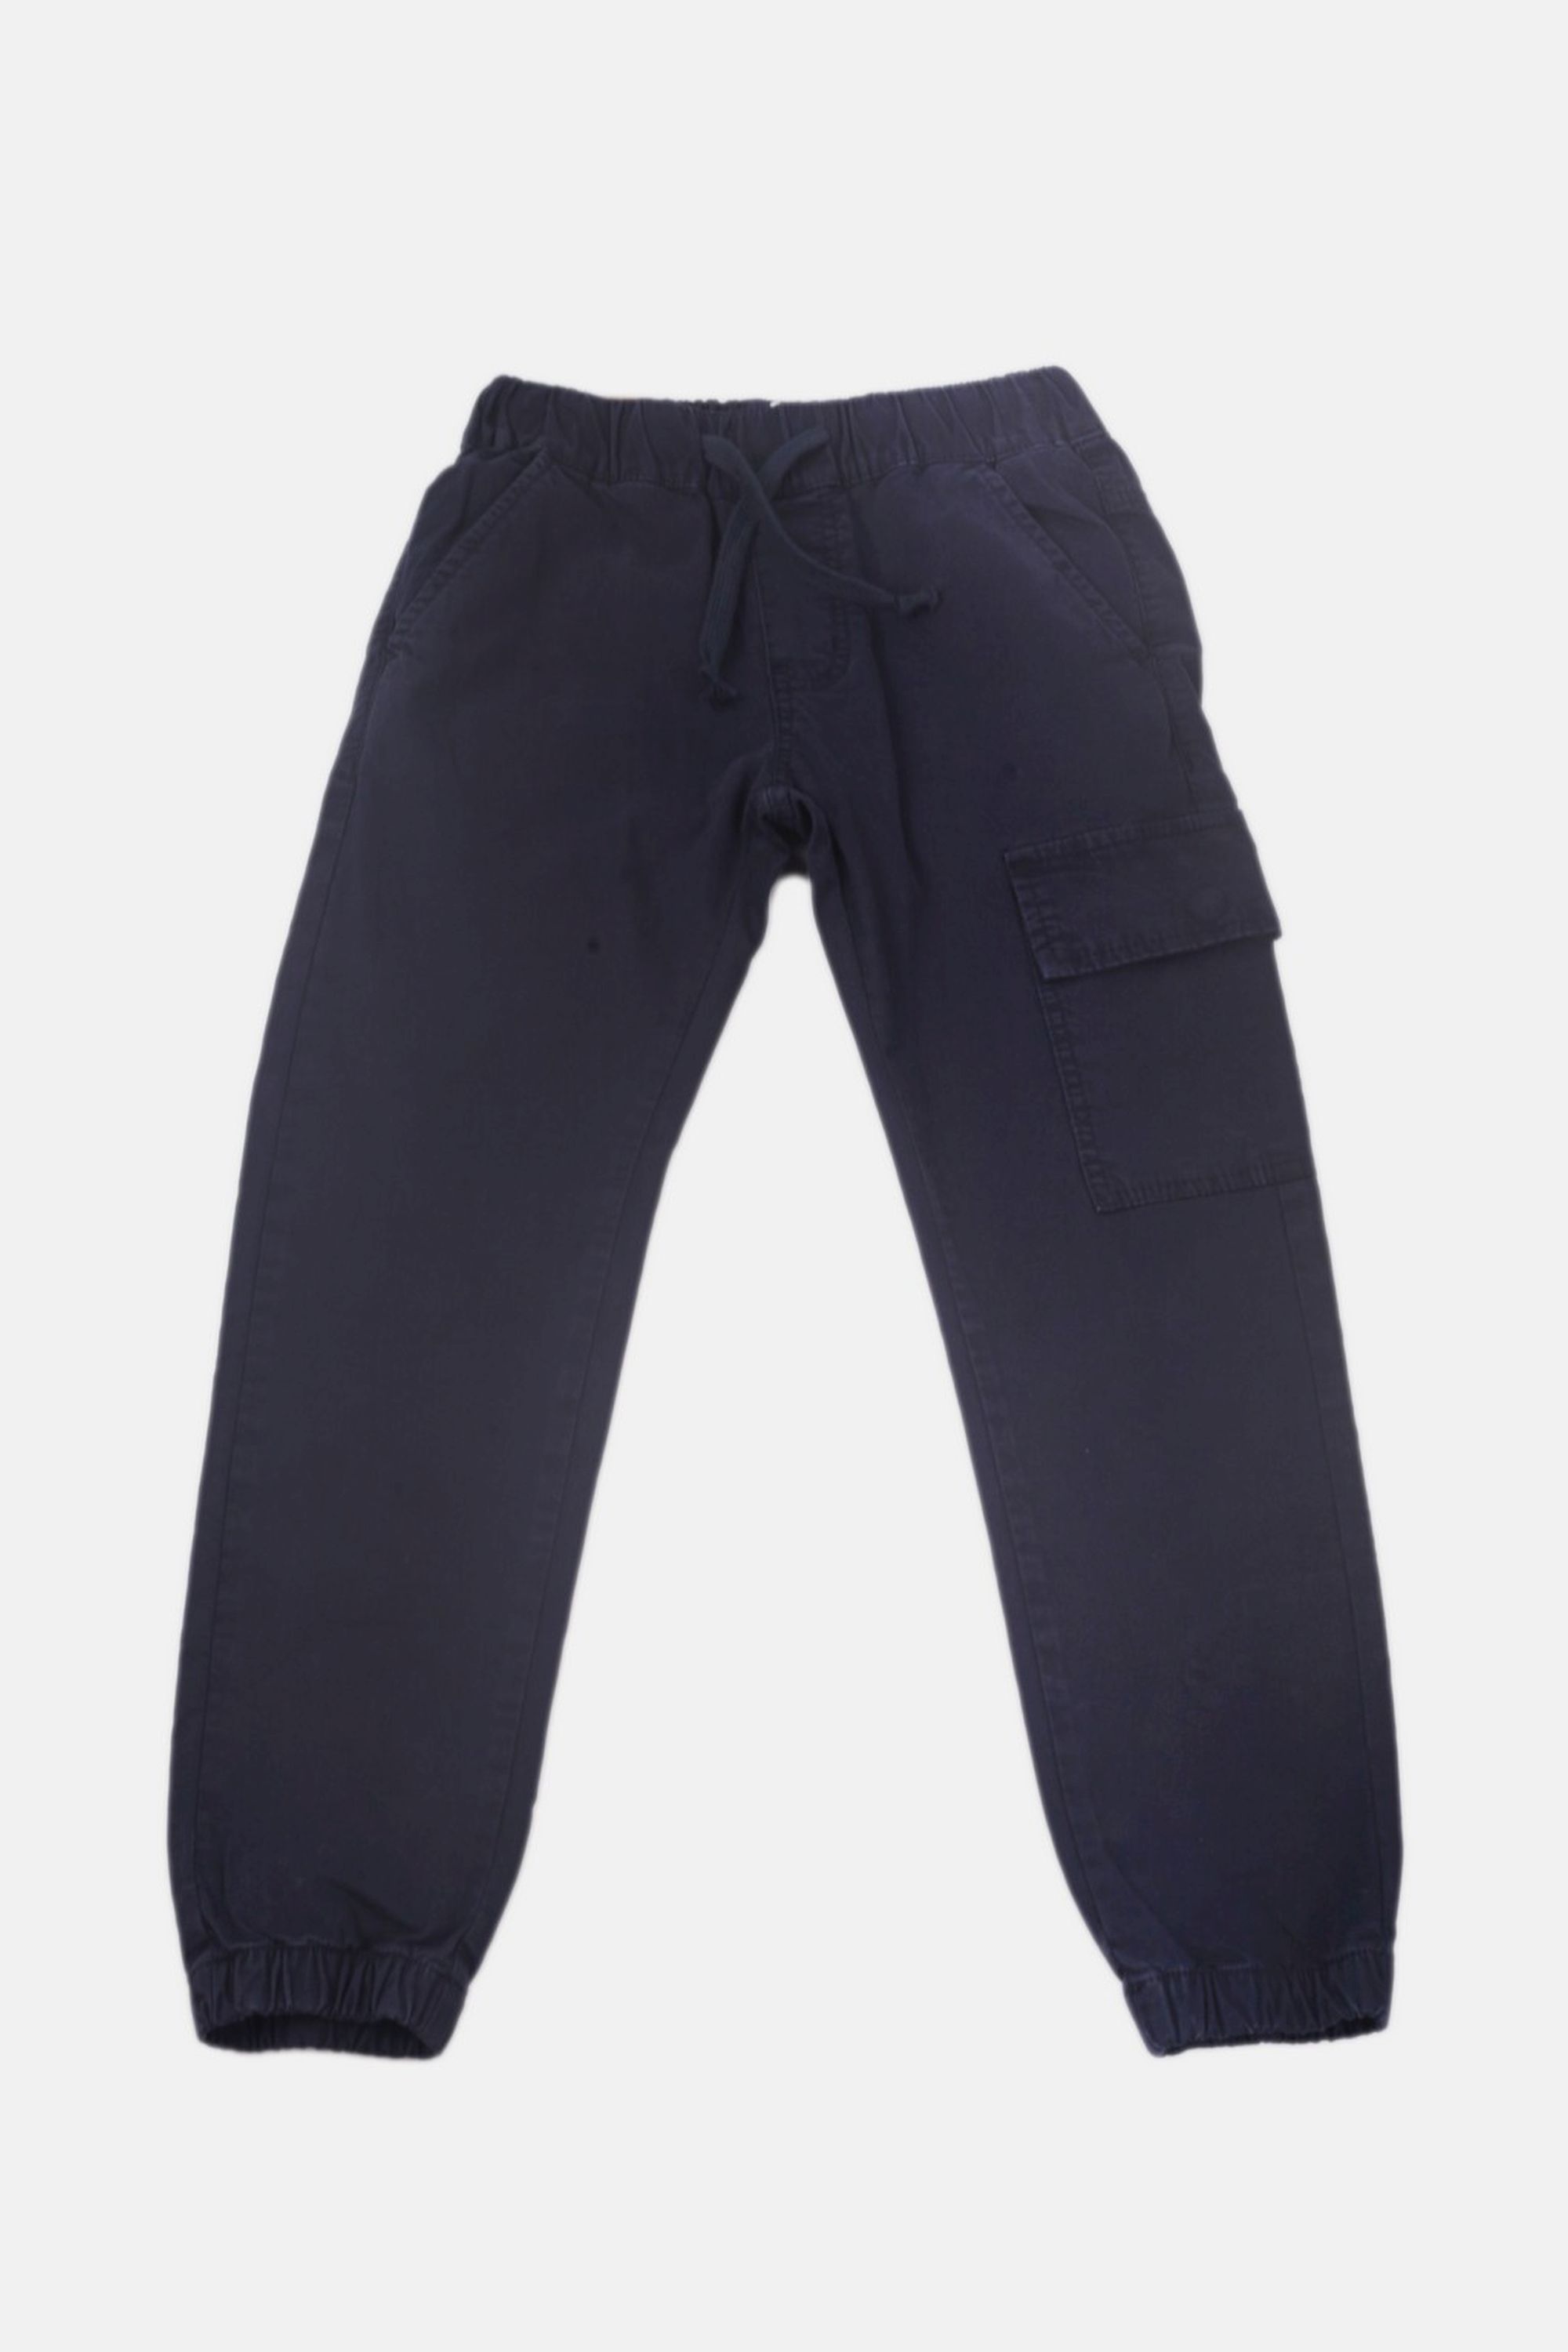 Chlapecké bavlněné kalhoty s gumou v pase/Hnědá, modrá Barva: Modrá, Velikost: vel. 3 (98/100 cm)